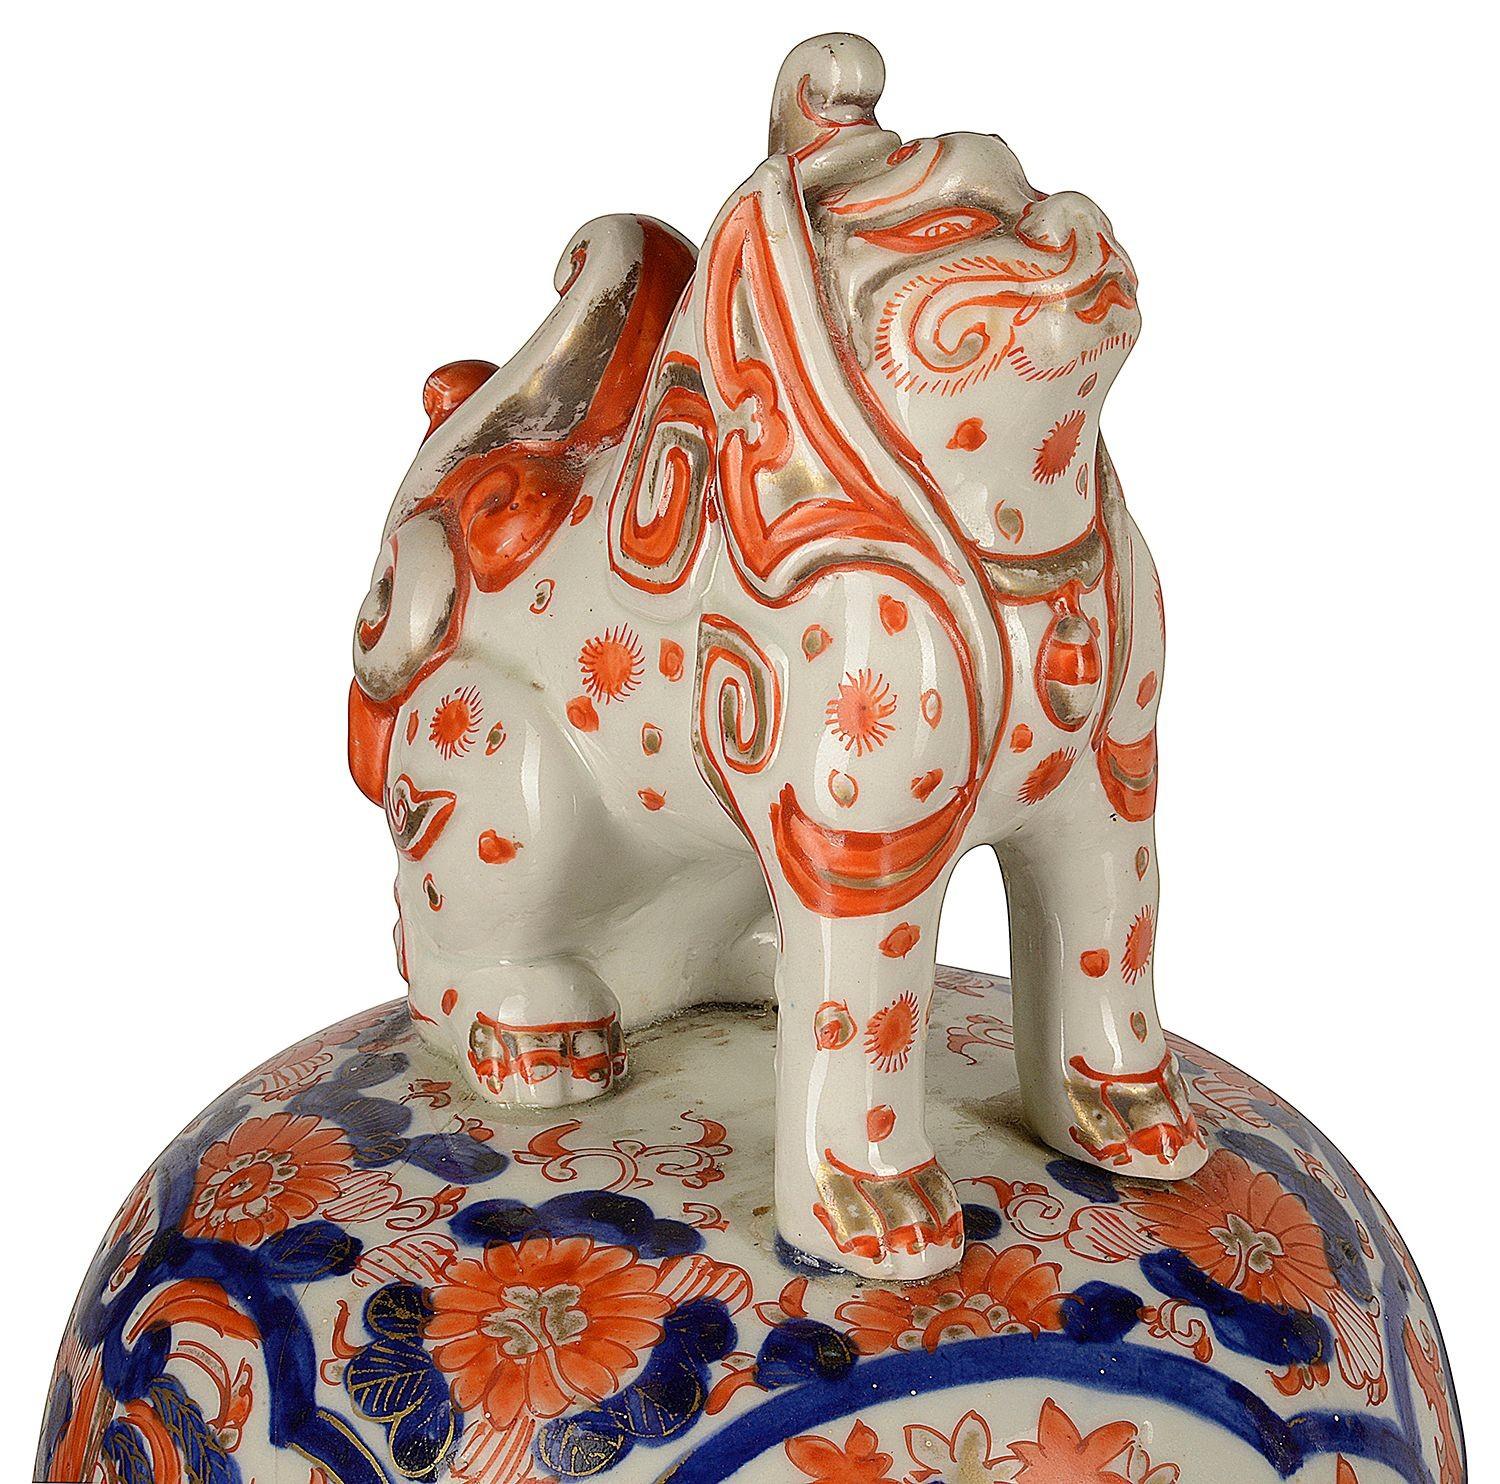 Paire de vases imari à couvercle de très bonne qualité, datant de la fin du XIXe siècle et de la période japonaise Meiji. Chacune d'entre elles est ornée de magnifiques motifs colorés bleu et orange, avec des panneaux peints à la main représentant